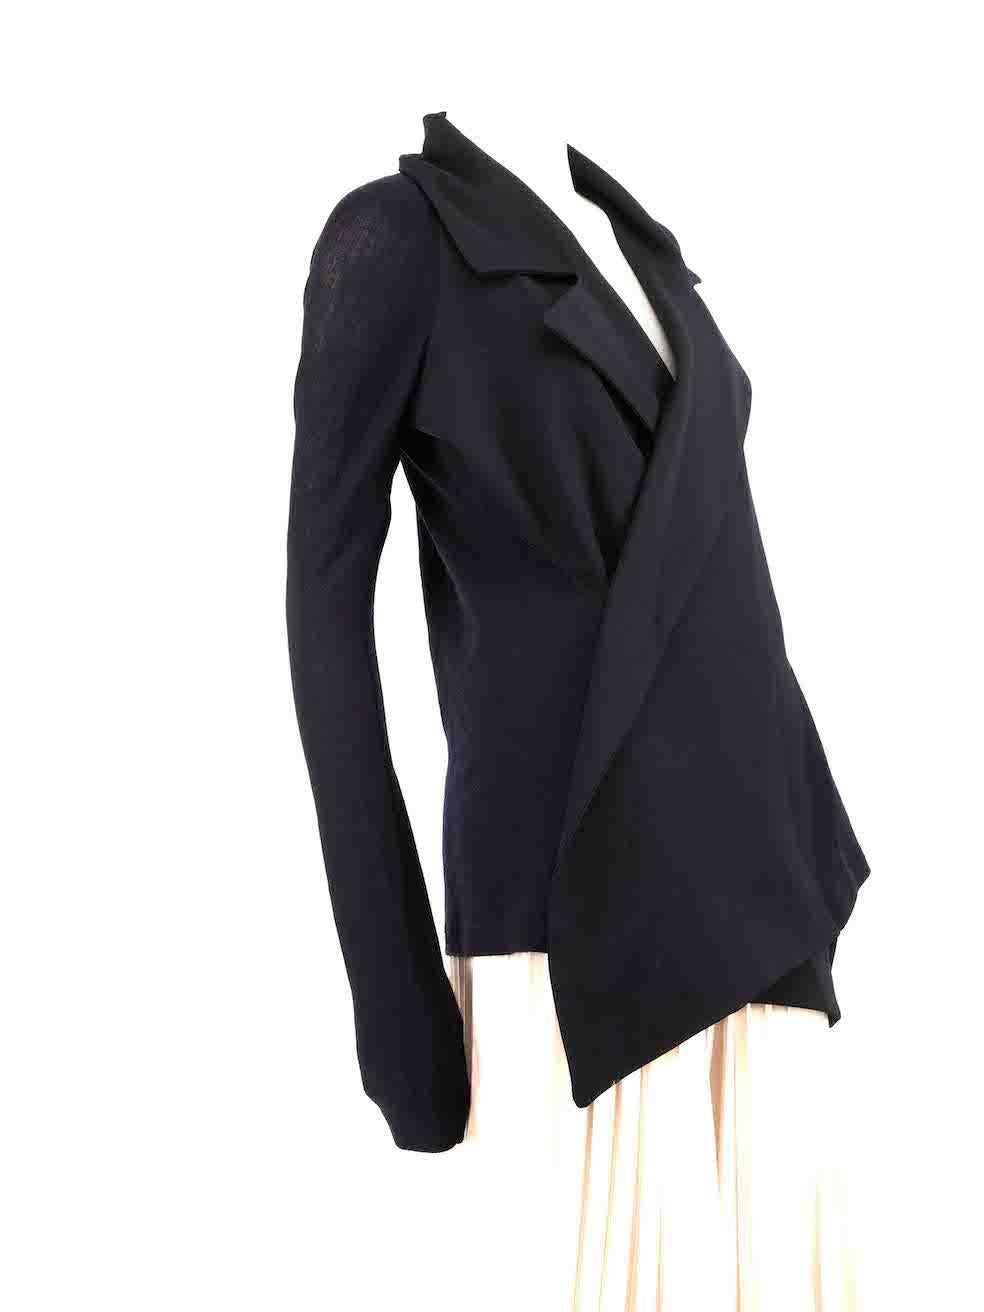 CONDIT ist sehr gut. Kaum sichtbare Abnutzungserscheinungen an der Jacke sind bei diesem gebrauchten Yohji Yamamoto Designer-Wiederverkaufsartikel zu erkennen.
 
 Einzelheiten
 Marineblau und Schwarz
 Wolle
 Taillierte Jacke
 Kontrastfarbene